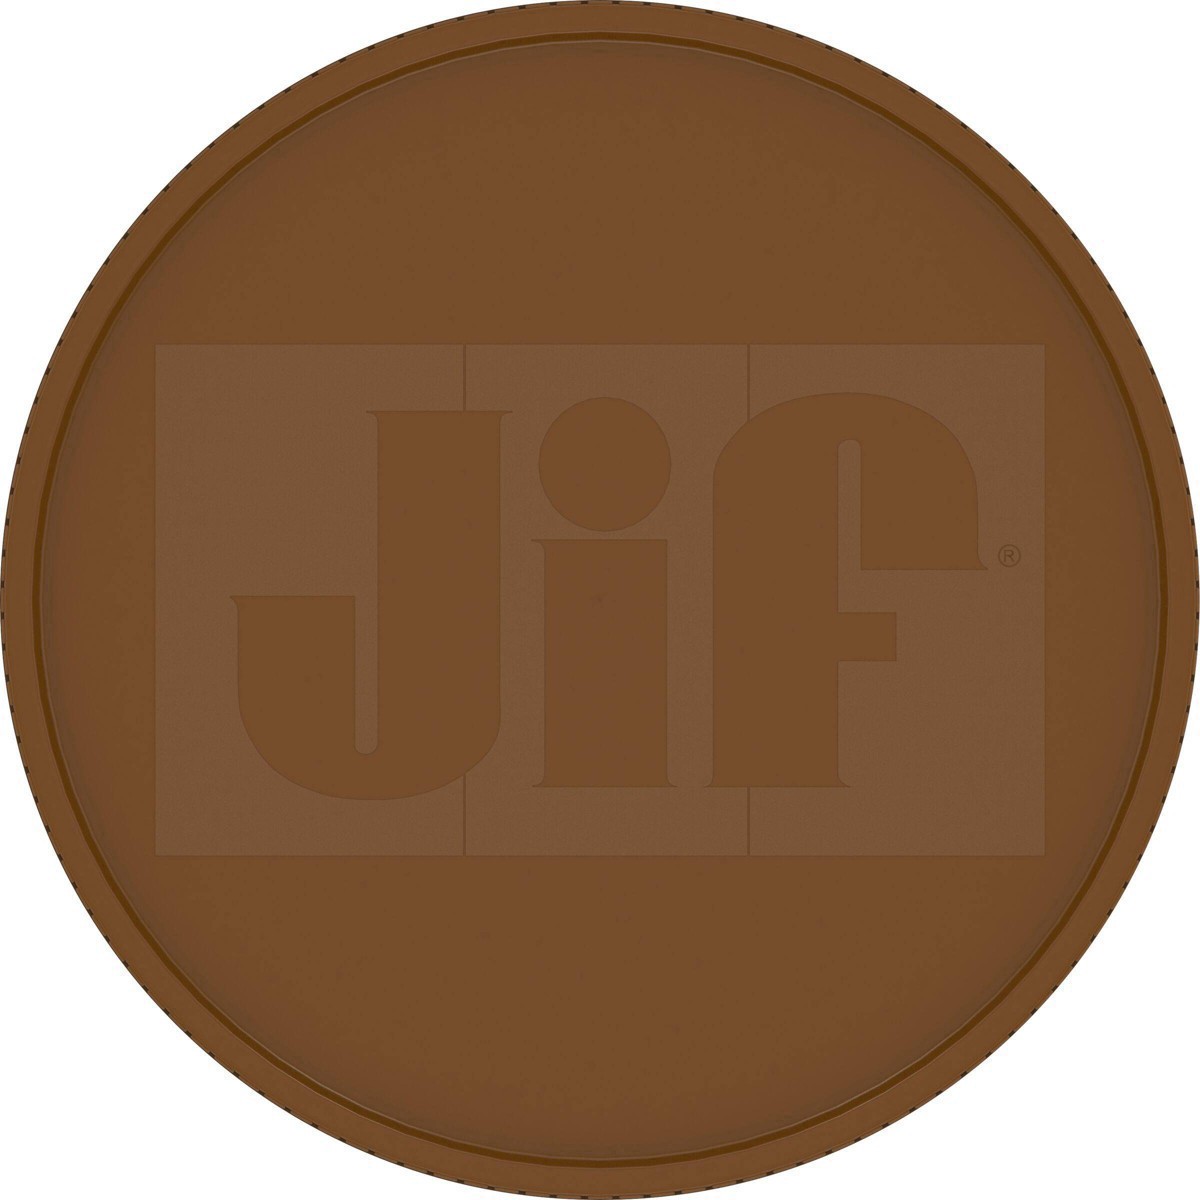 slide 19 of 41, Jif Natural Crunchy Peanut Butter, 16 oz